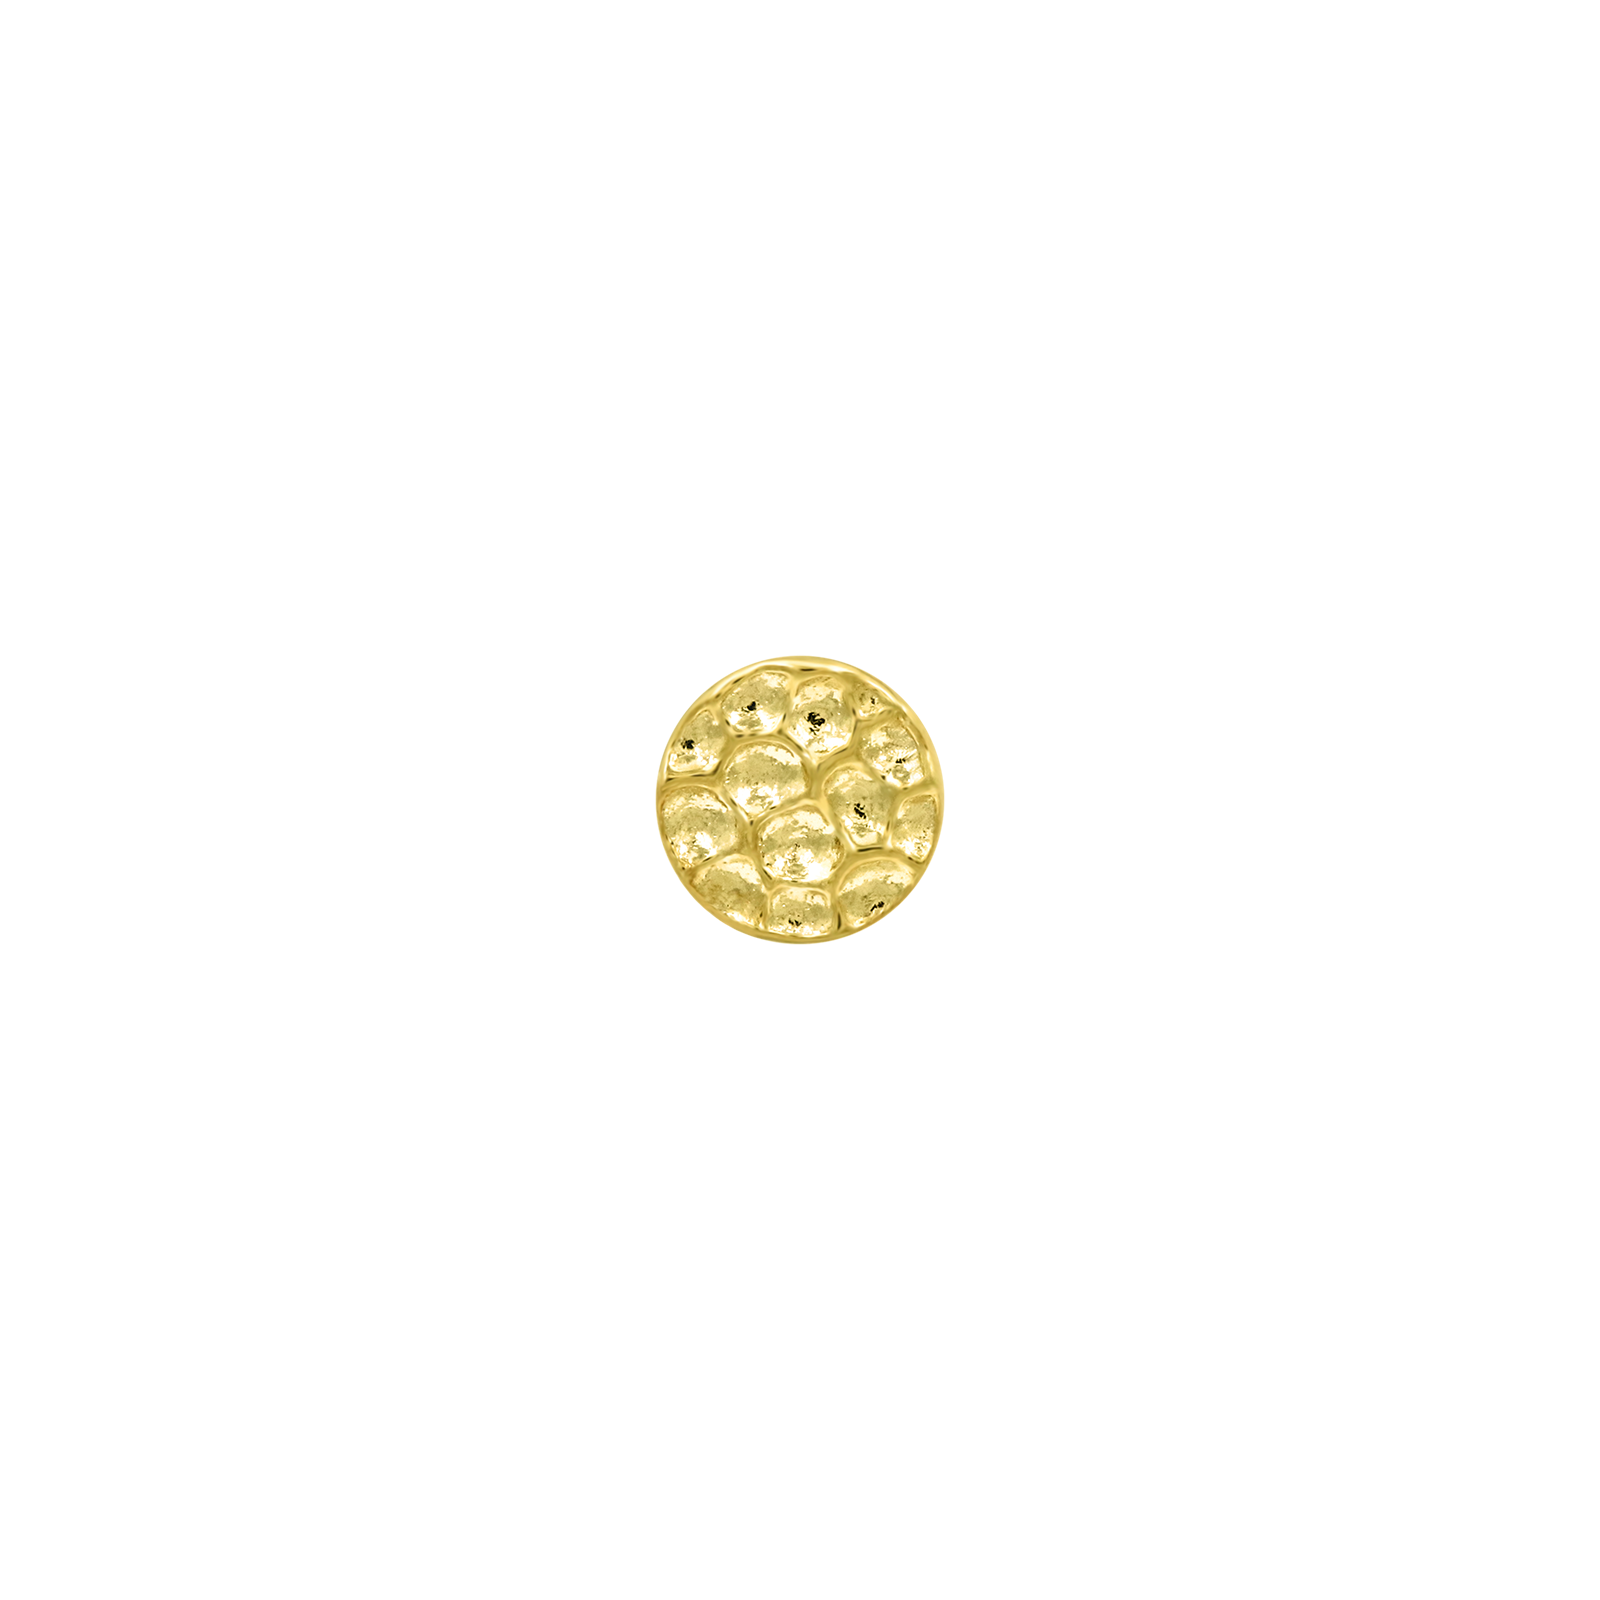 Hammered Disk in 14k Gold by Junipurr